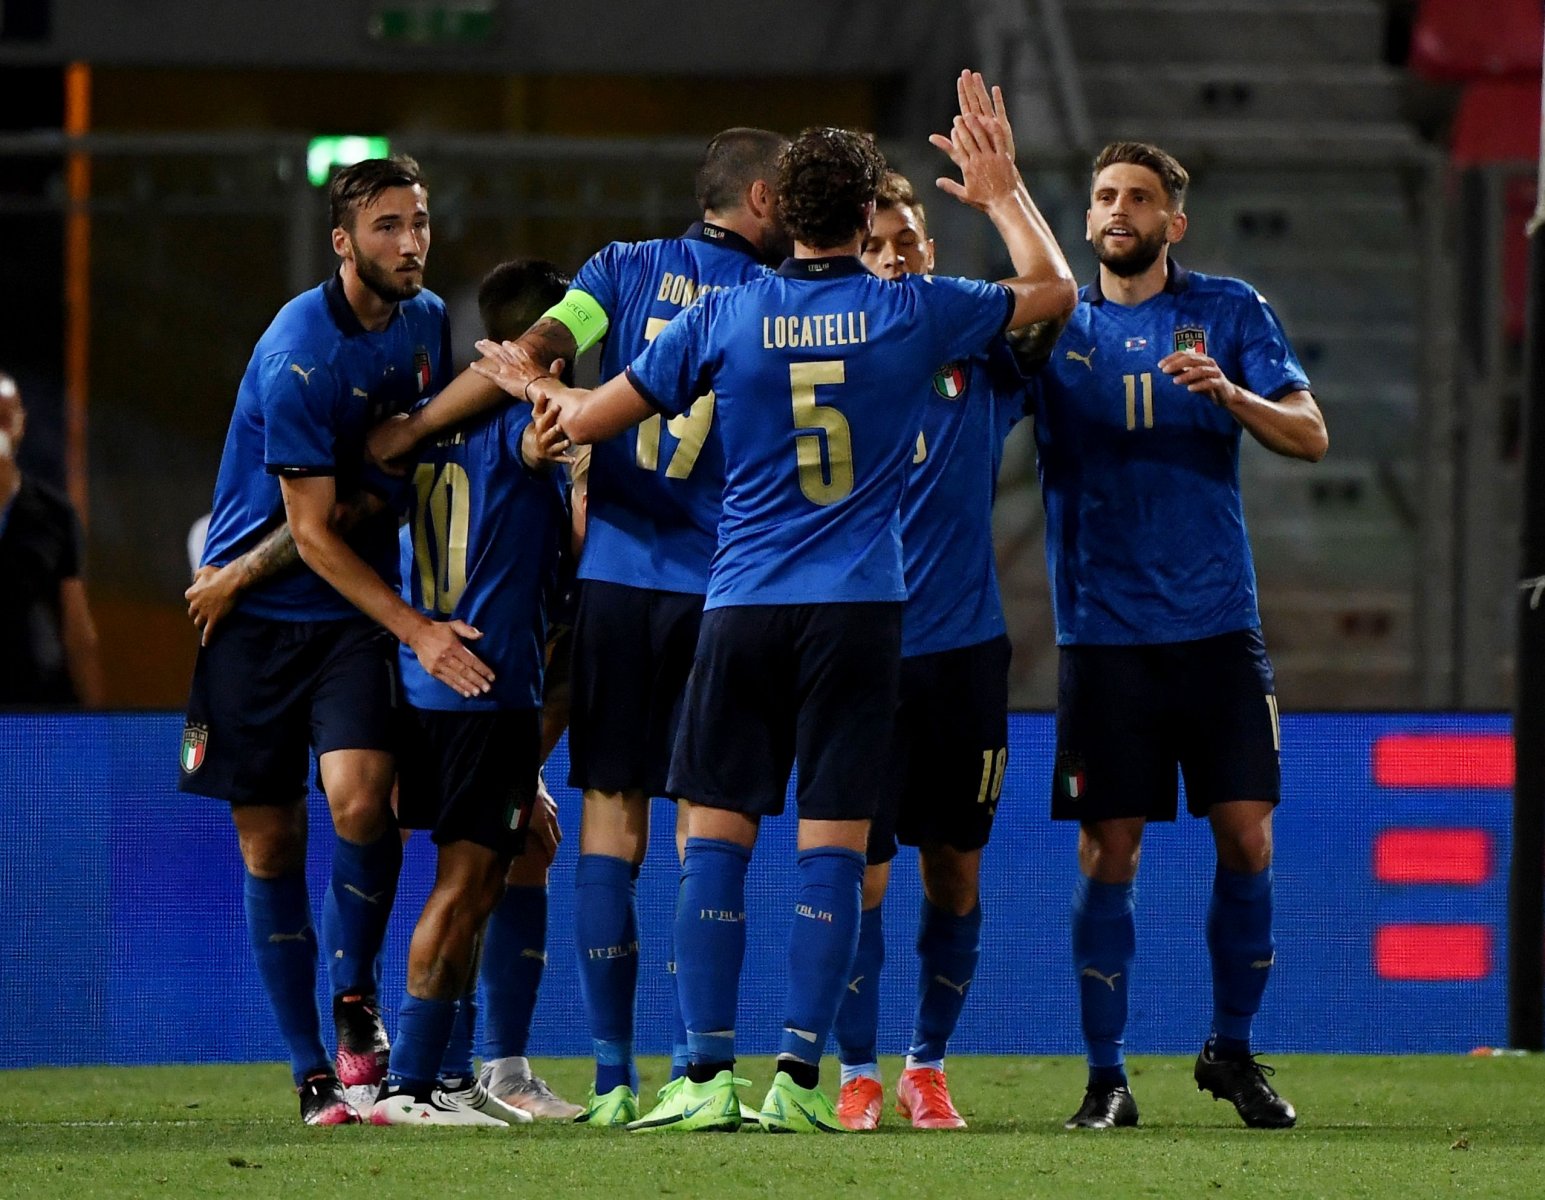 Finalja Itali-Argjentinë, Mancini grumbullon 30 lojtarë